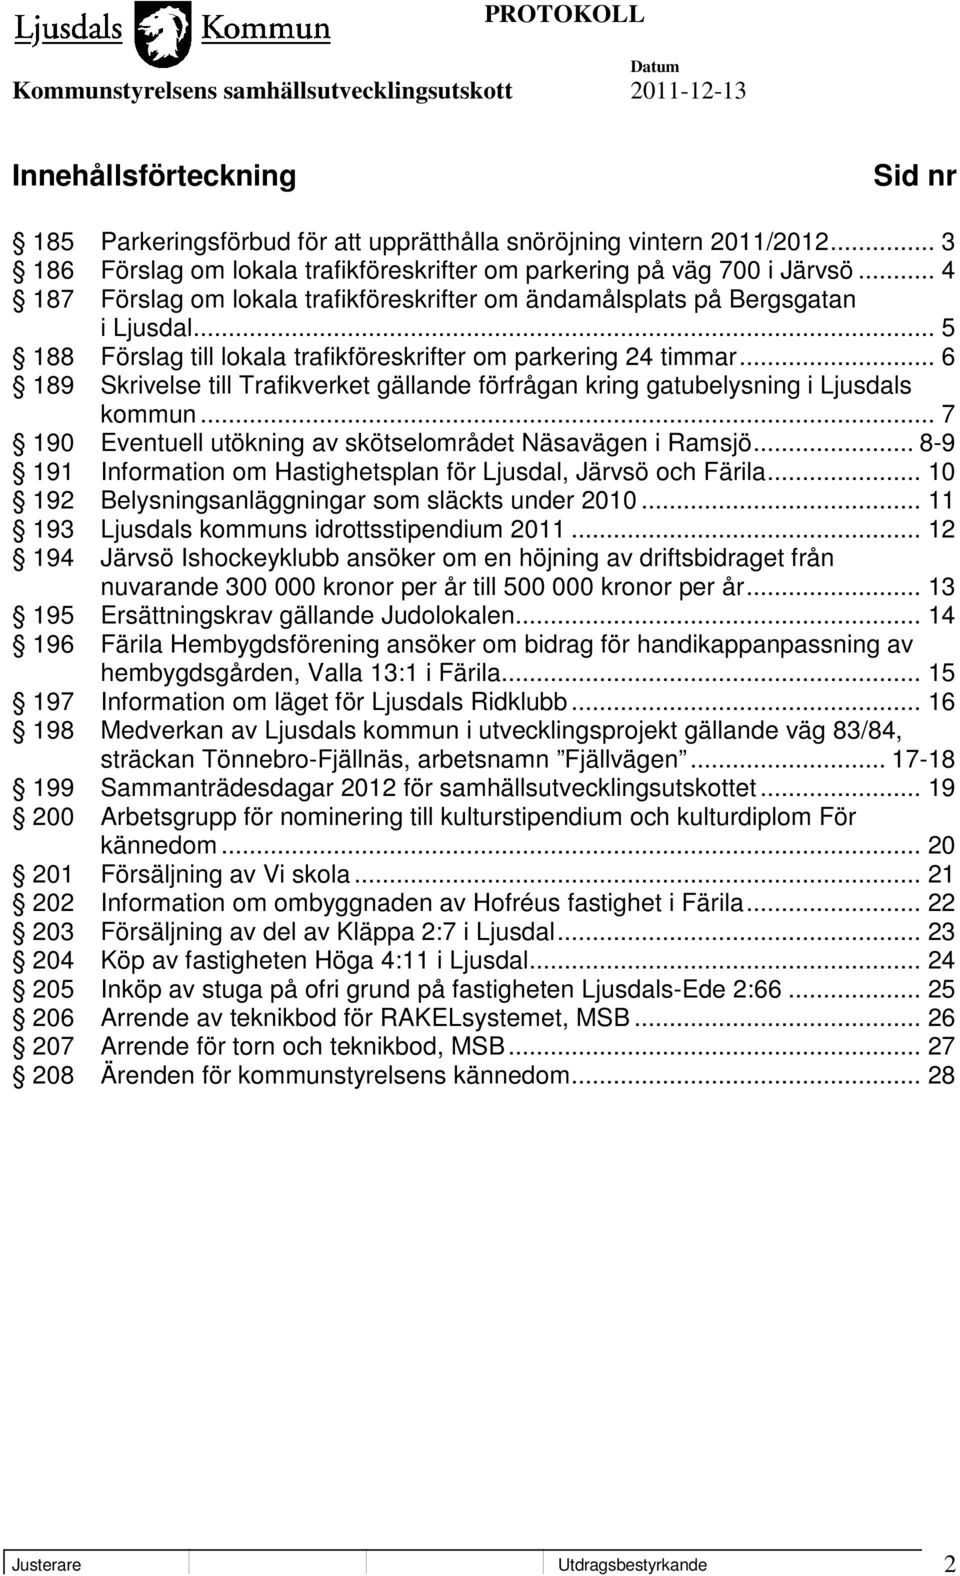 .. 6 189 Skrivelse till Trafikverket gällande förfrågan kring gatubelysning i Ljusdals kommun... 7 190 Eventuell utökning av skötselområdet Näsavägen i Ramsjö.